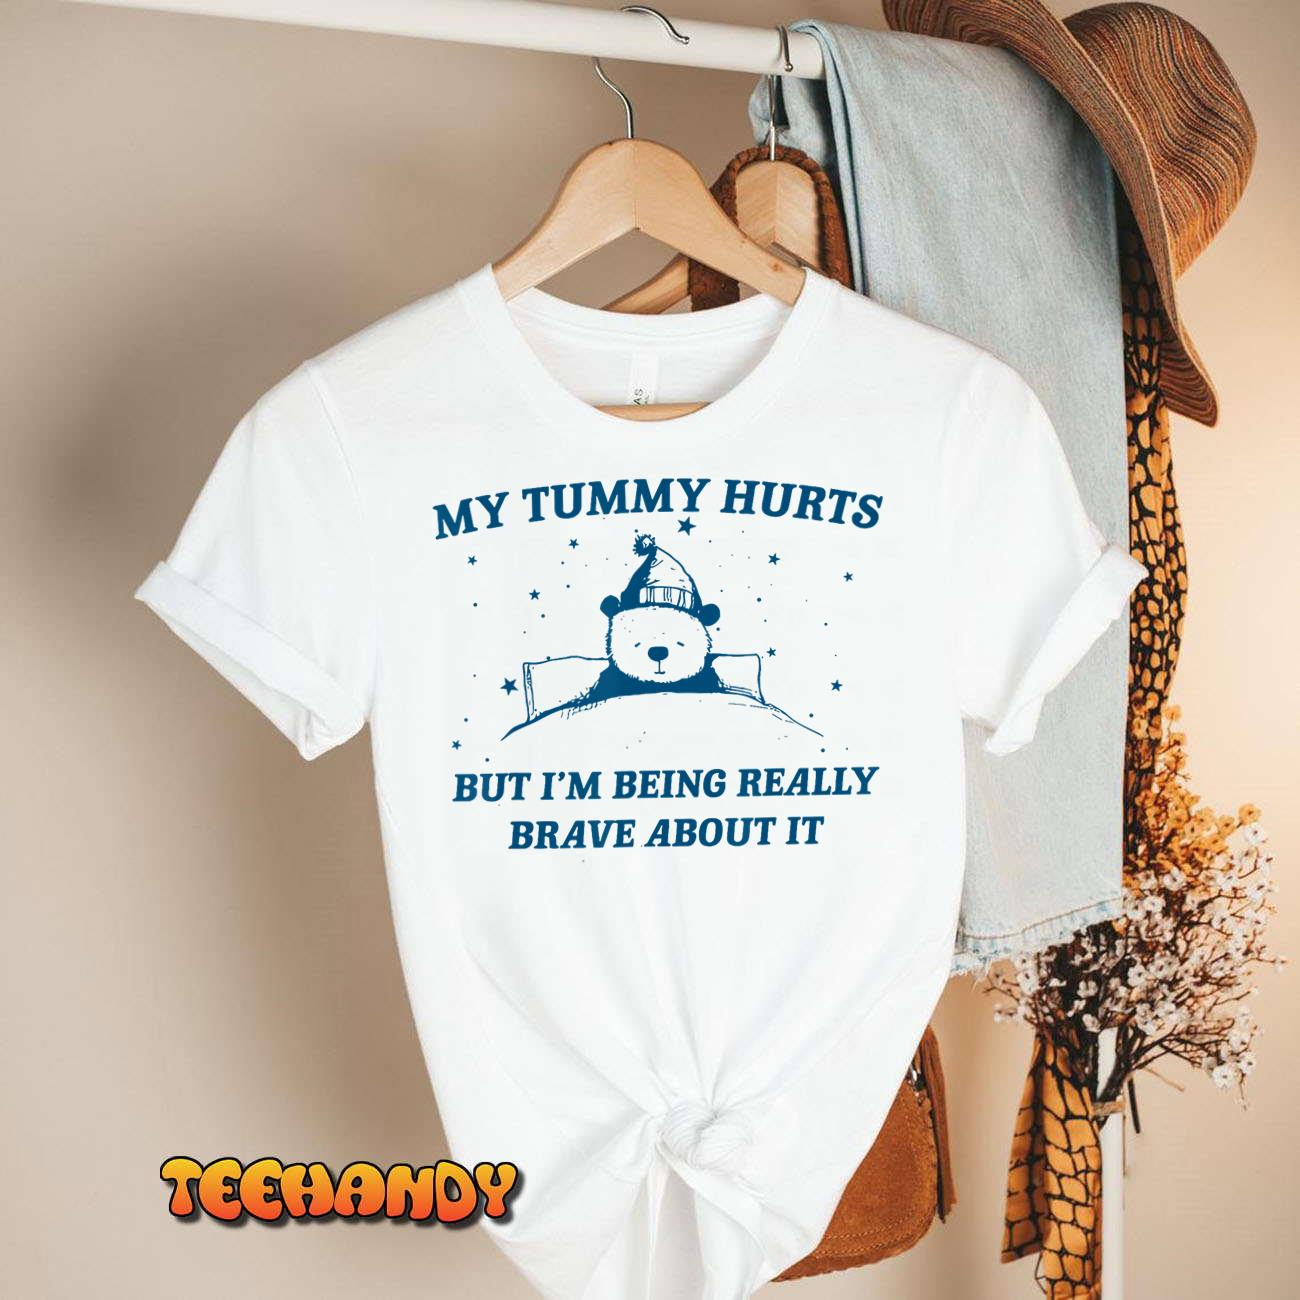 My Tummy Hurts Funny Bear Retro Cartoon Meme Old Cartoon T-Shirt